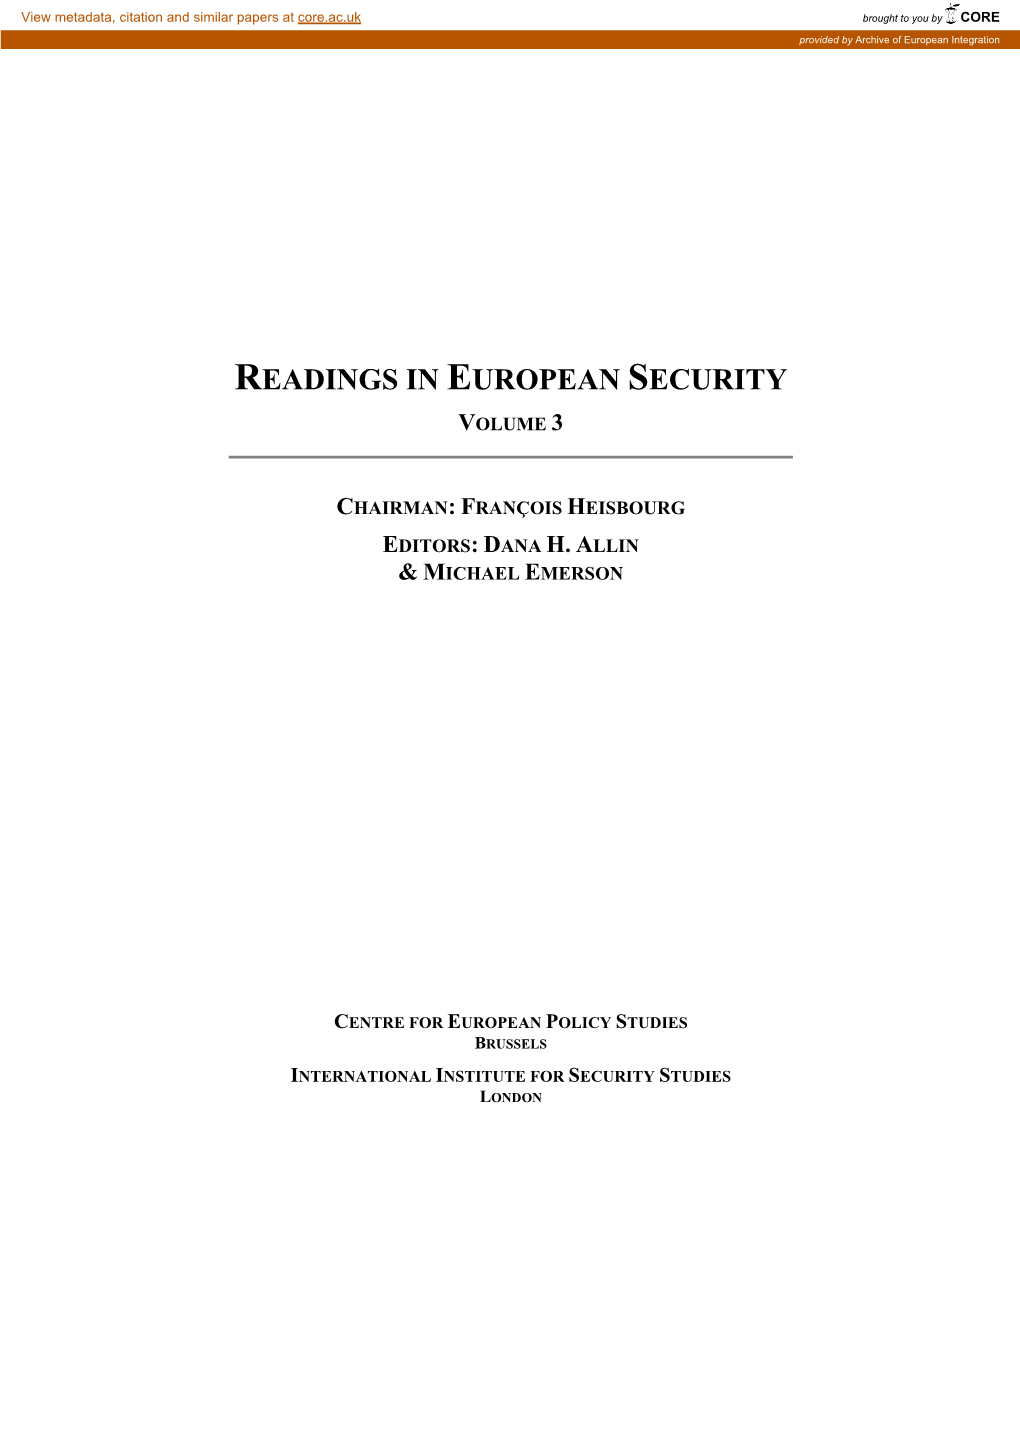 Readings in European Security Volume 3